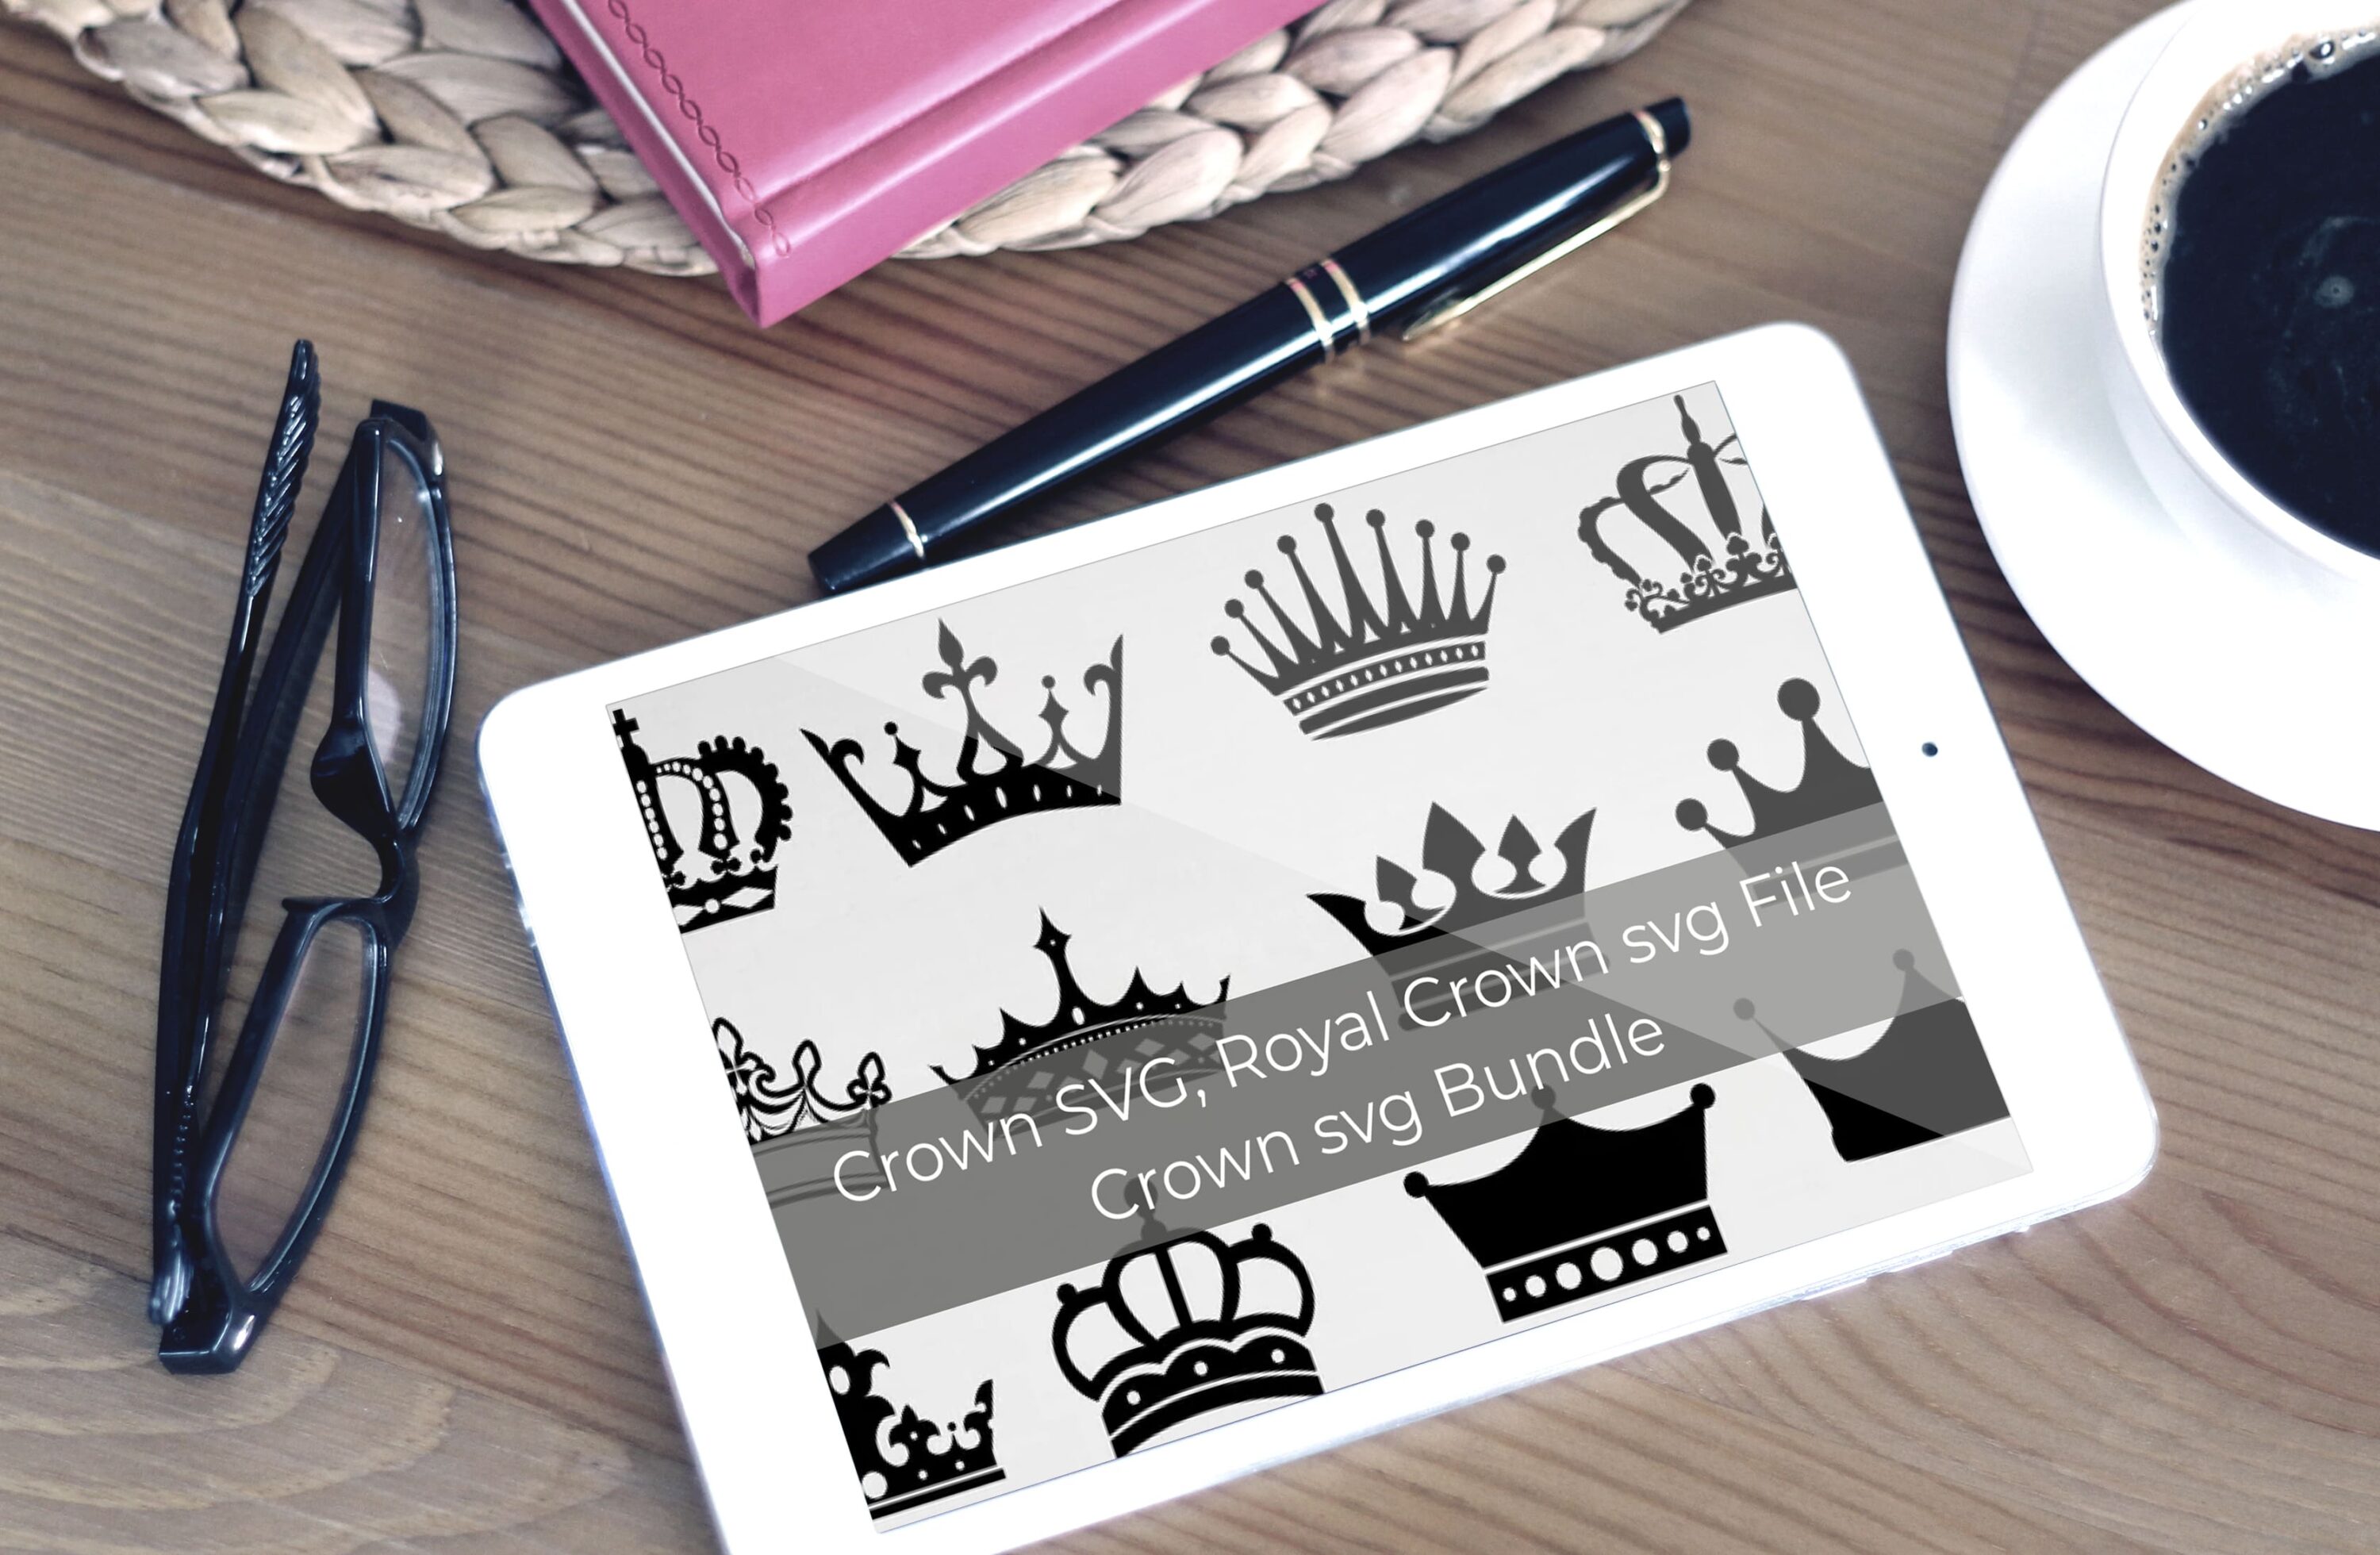 Tablet option of the Royal Crown SVG Bundle.